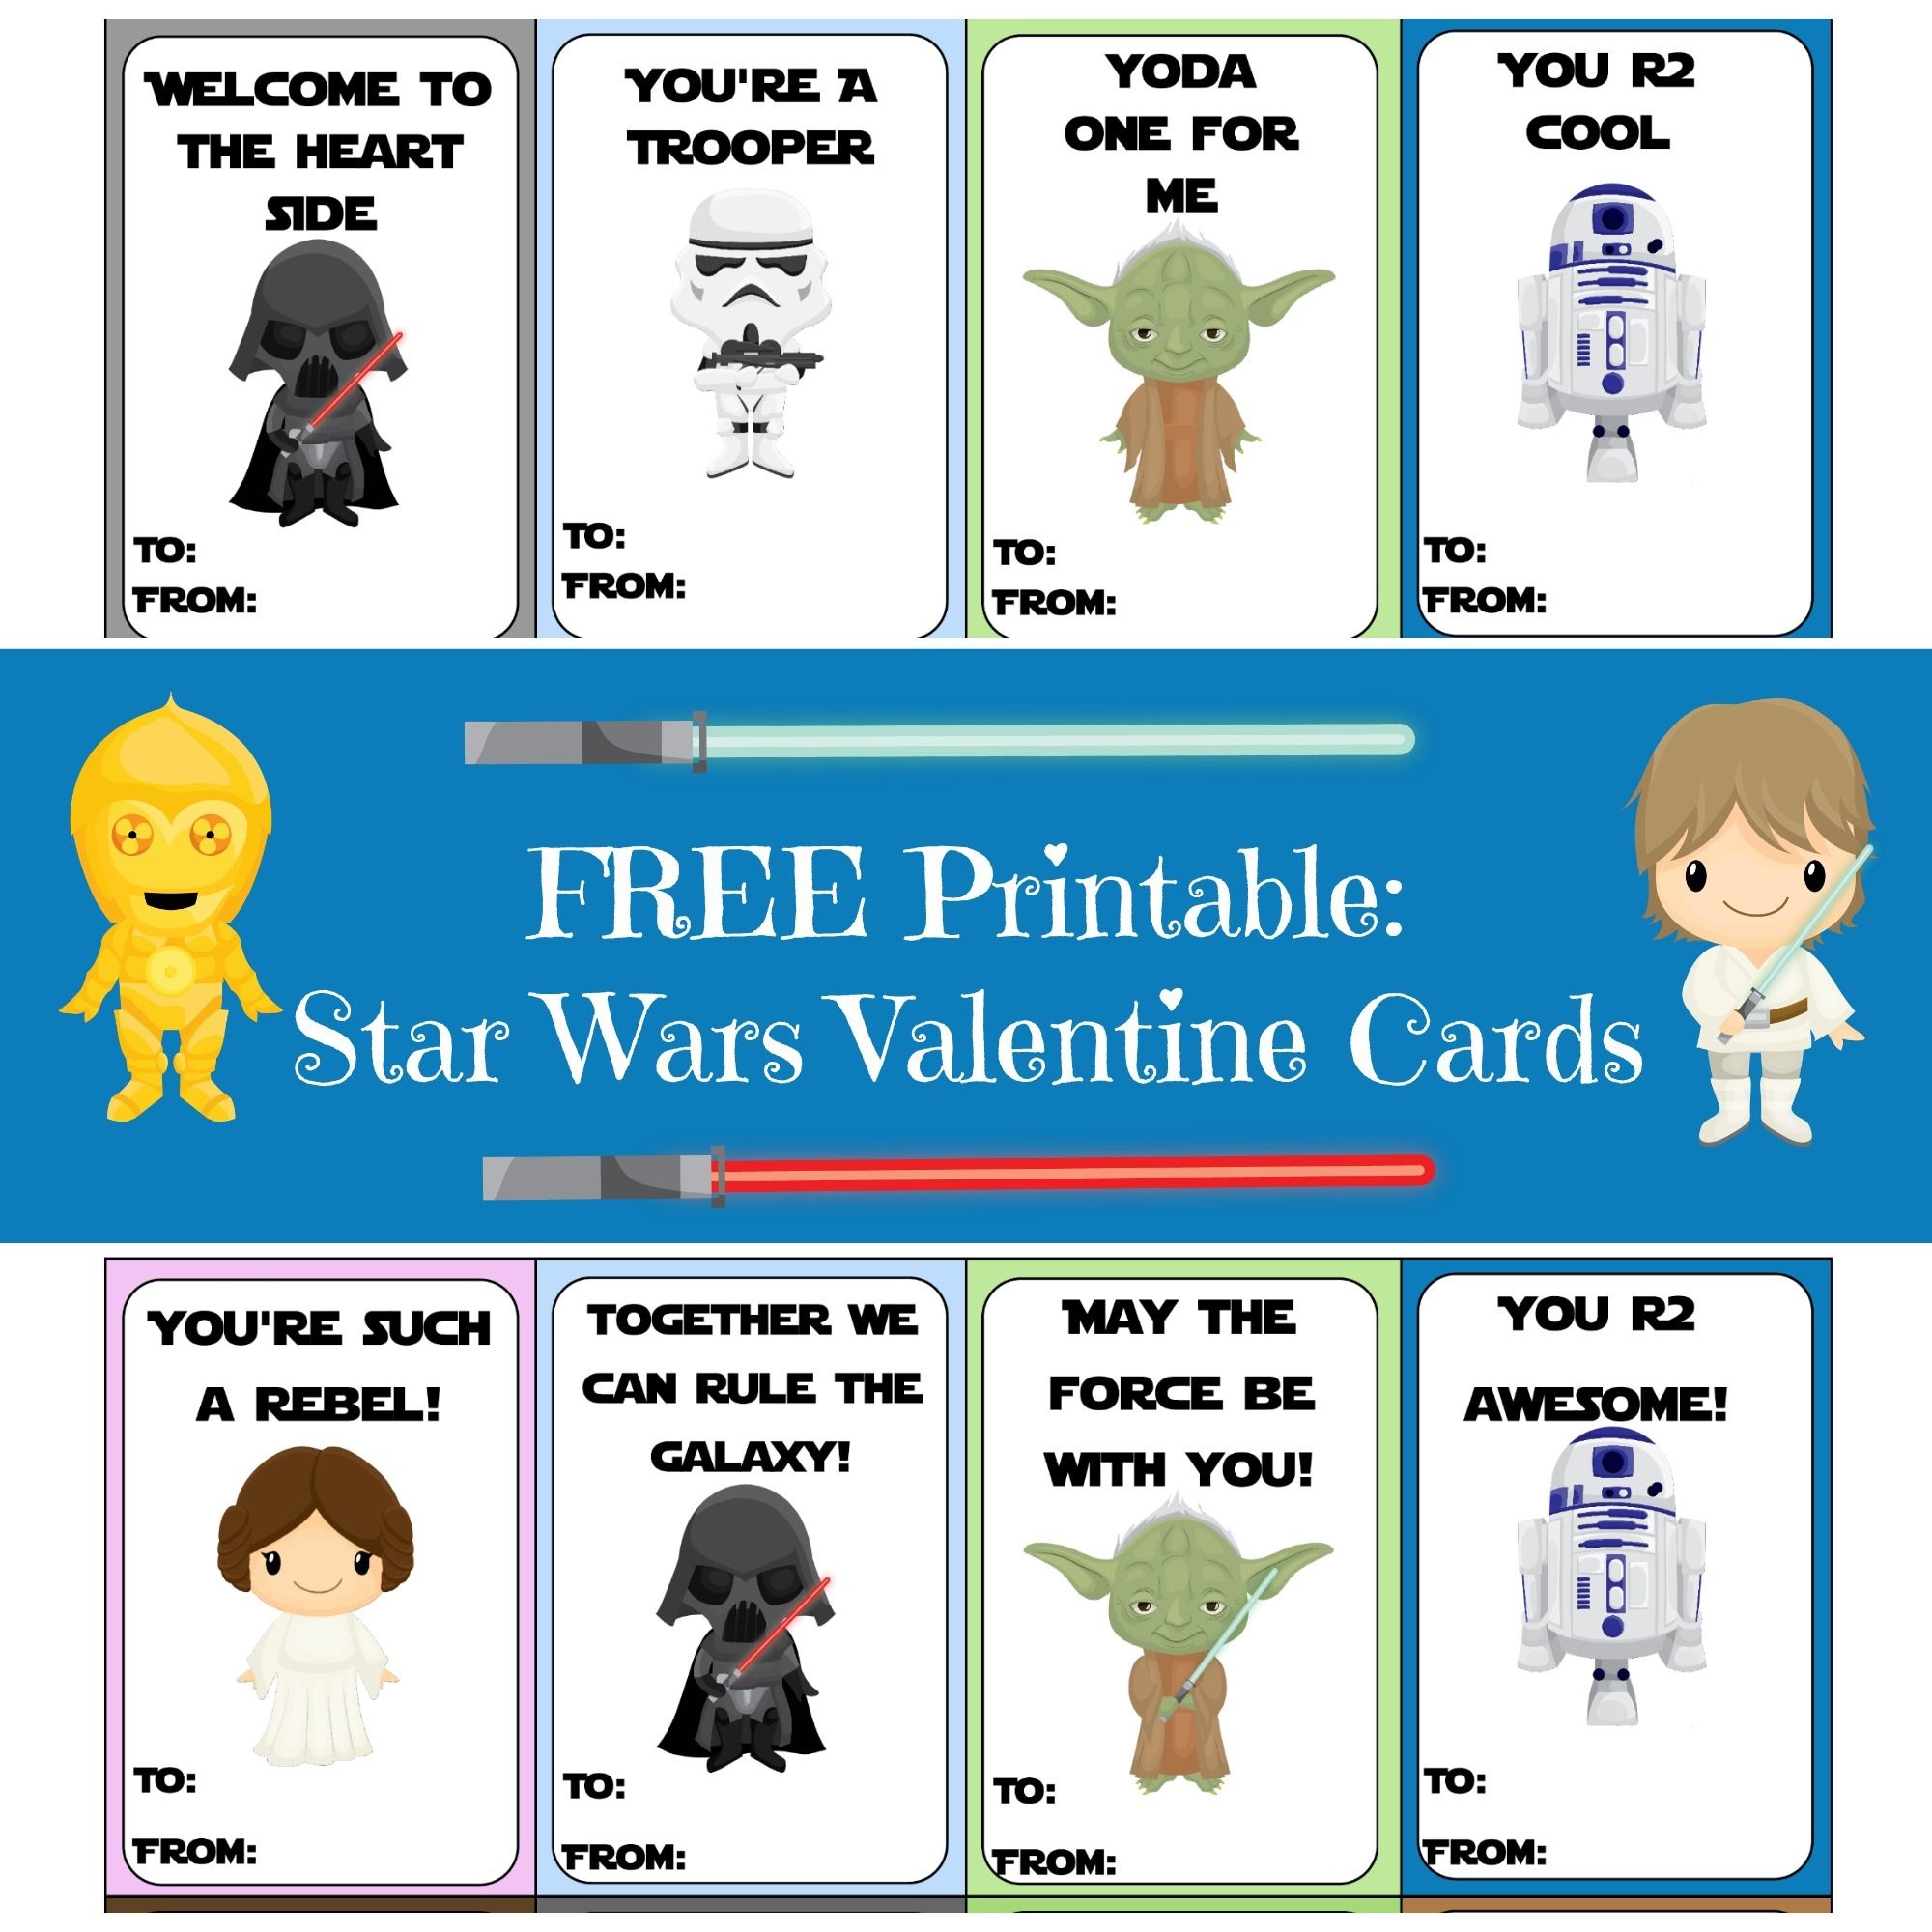 Valentine Card Round-Up | Printables | Starwars Valentines Cards - Free Printable Lego Star Wars Valentines